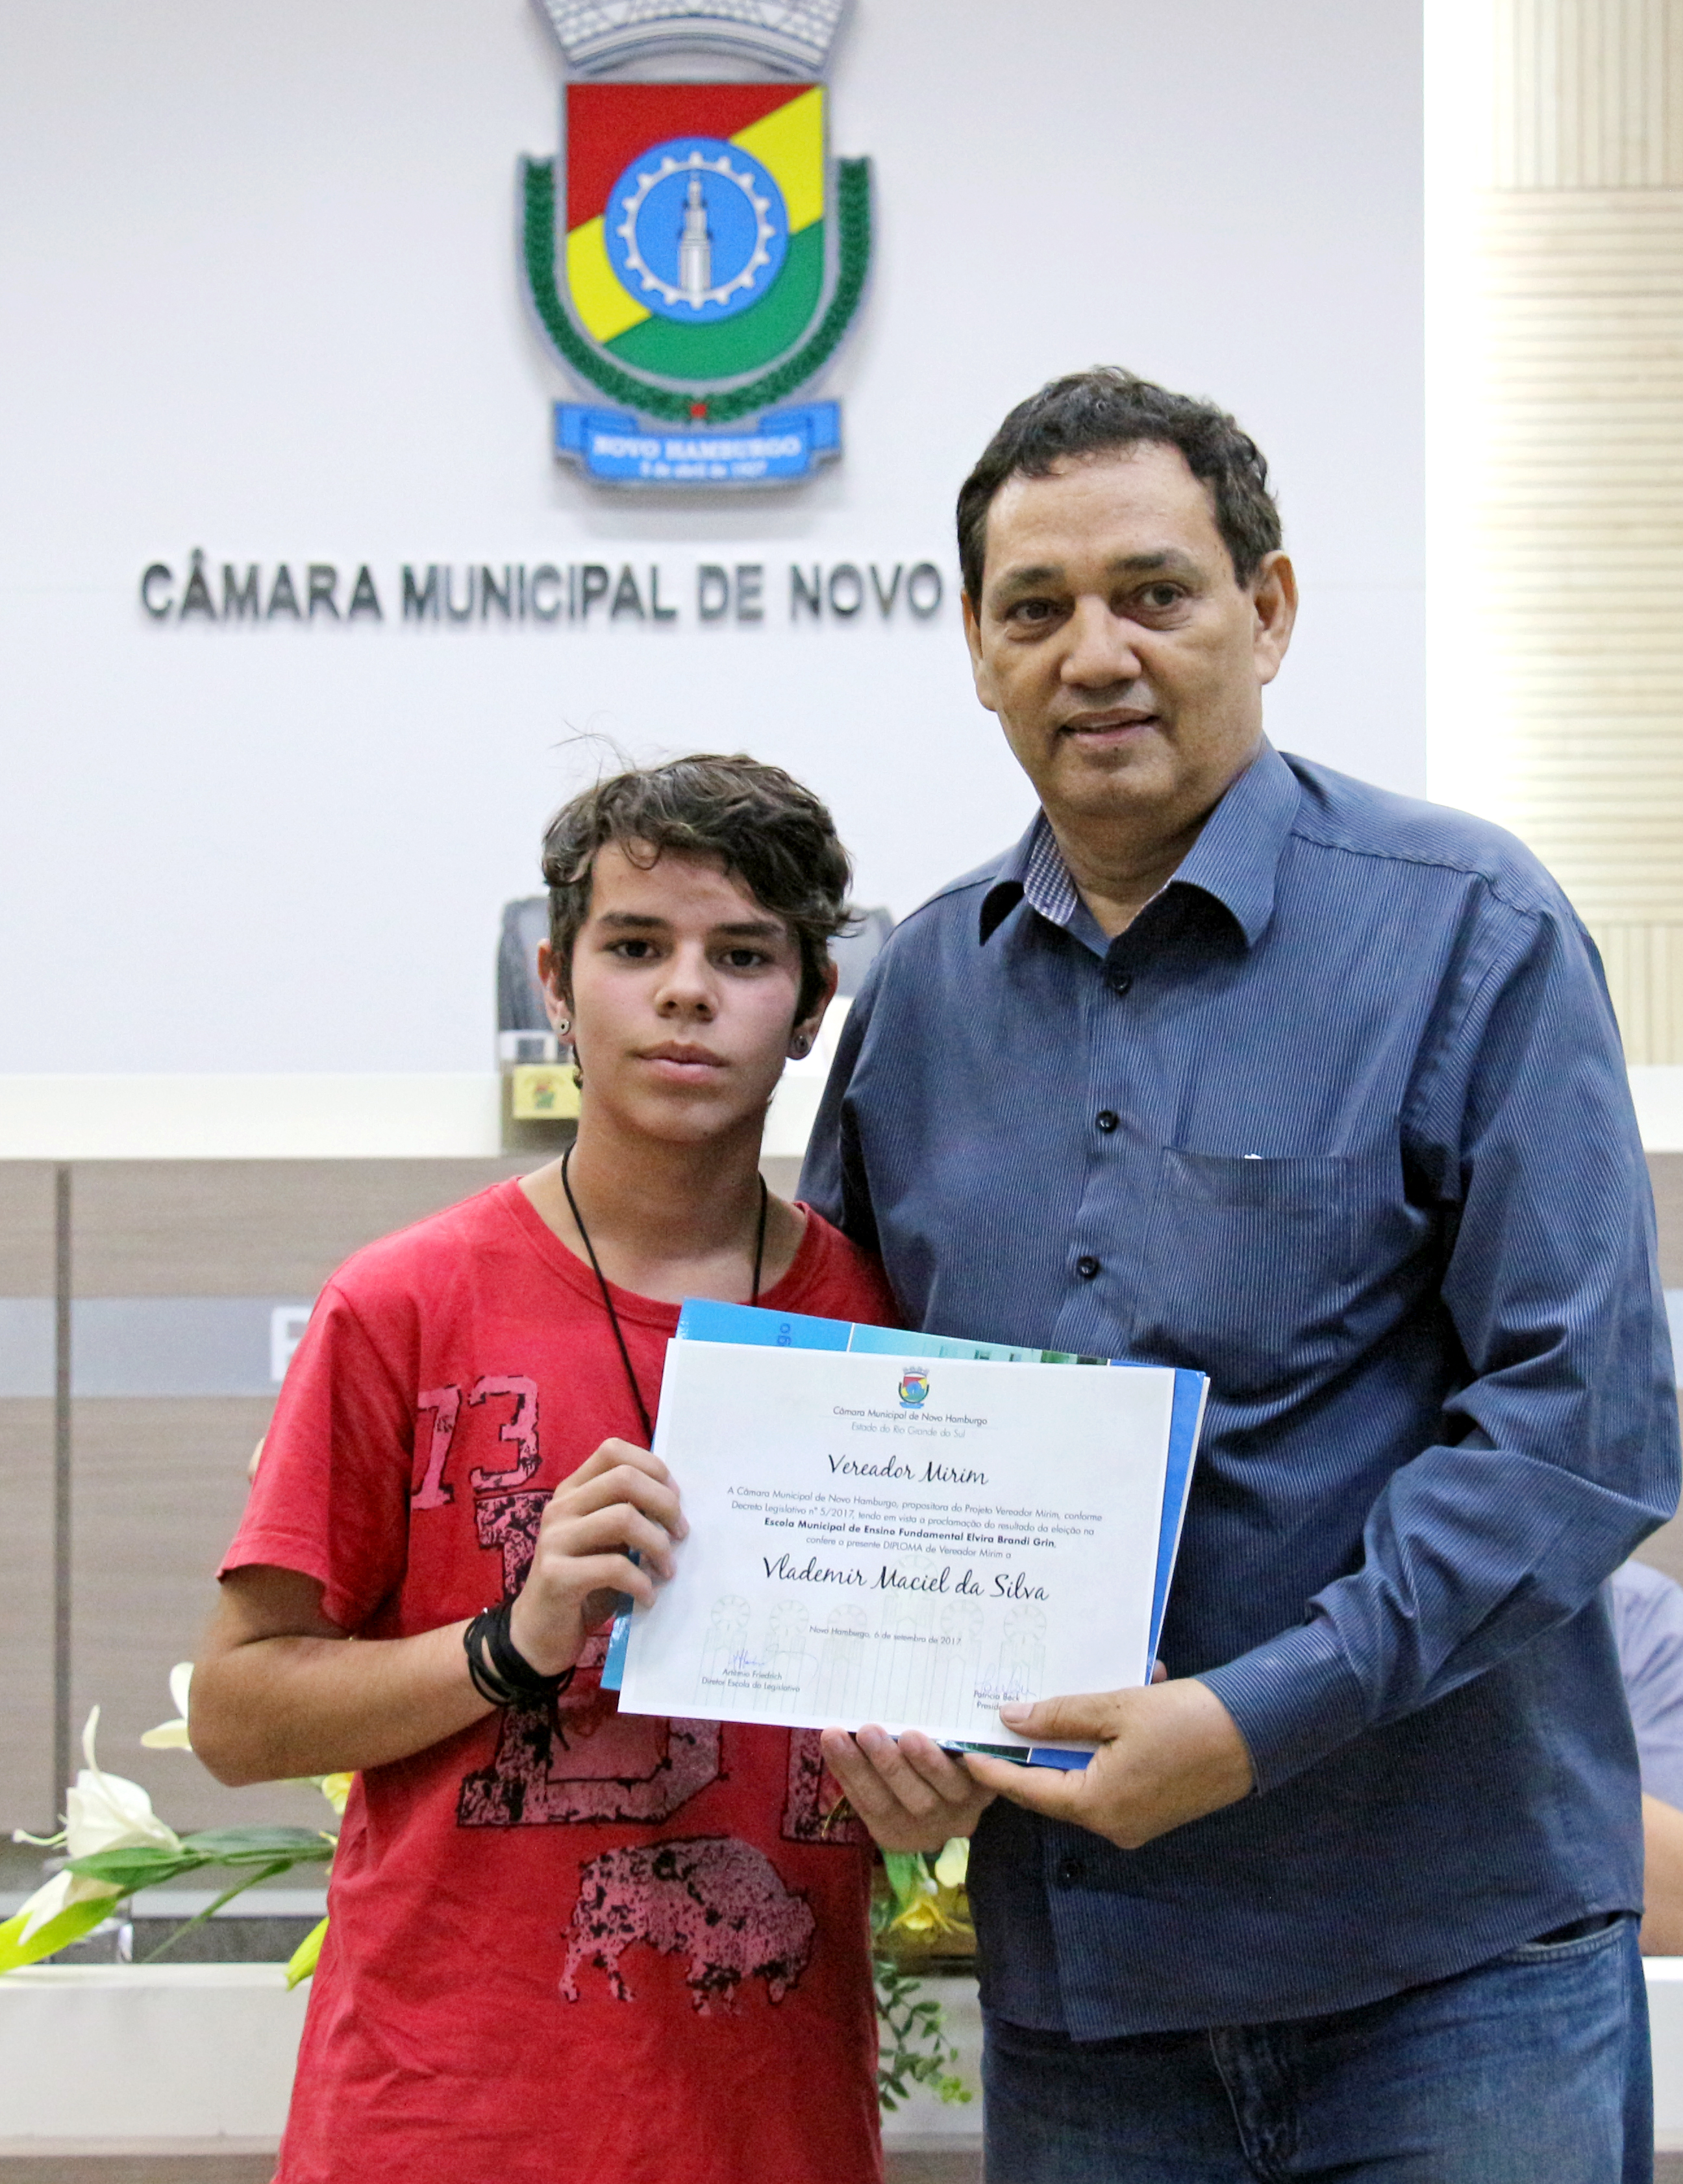 11/09/2017 - Gabinete: Inspetor Luz entrega diploma de Vereador Mirim